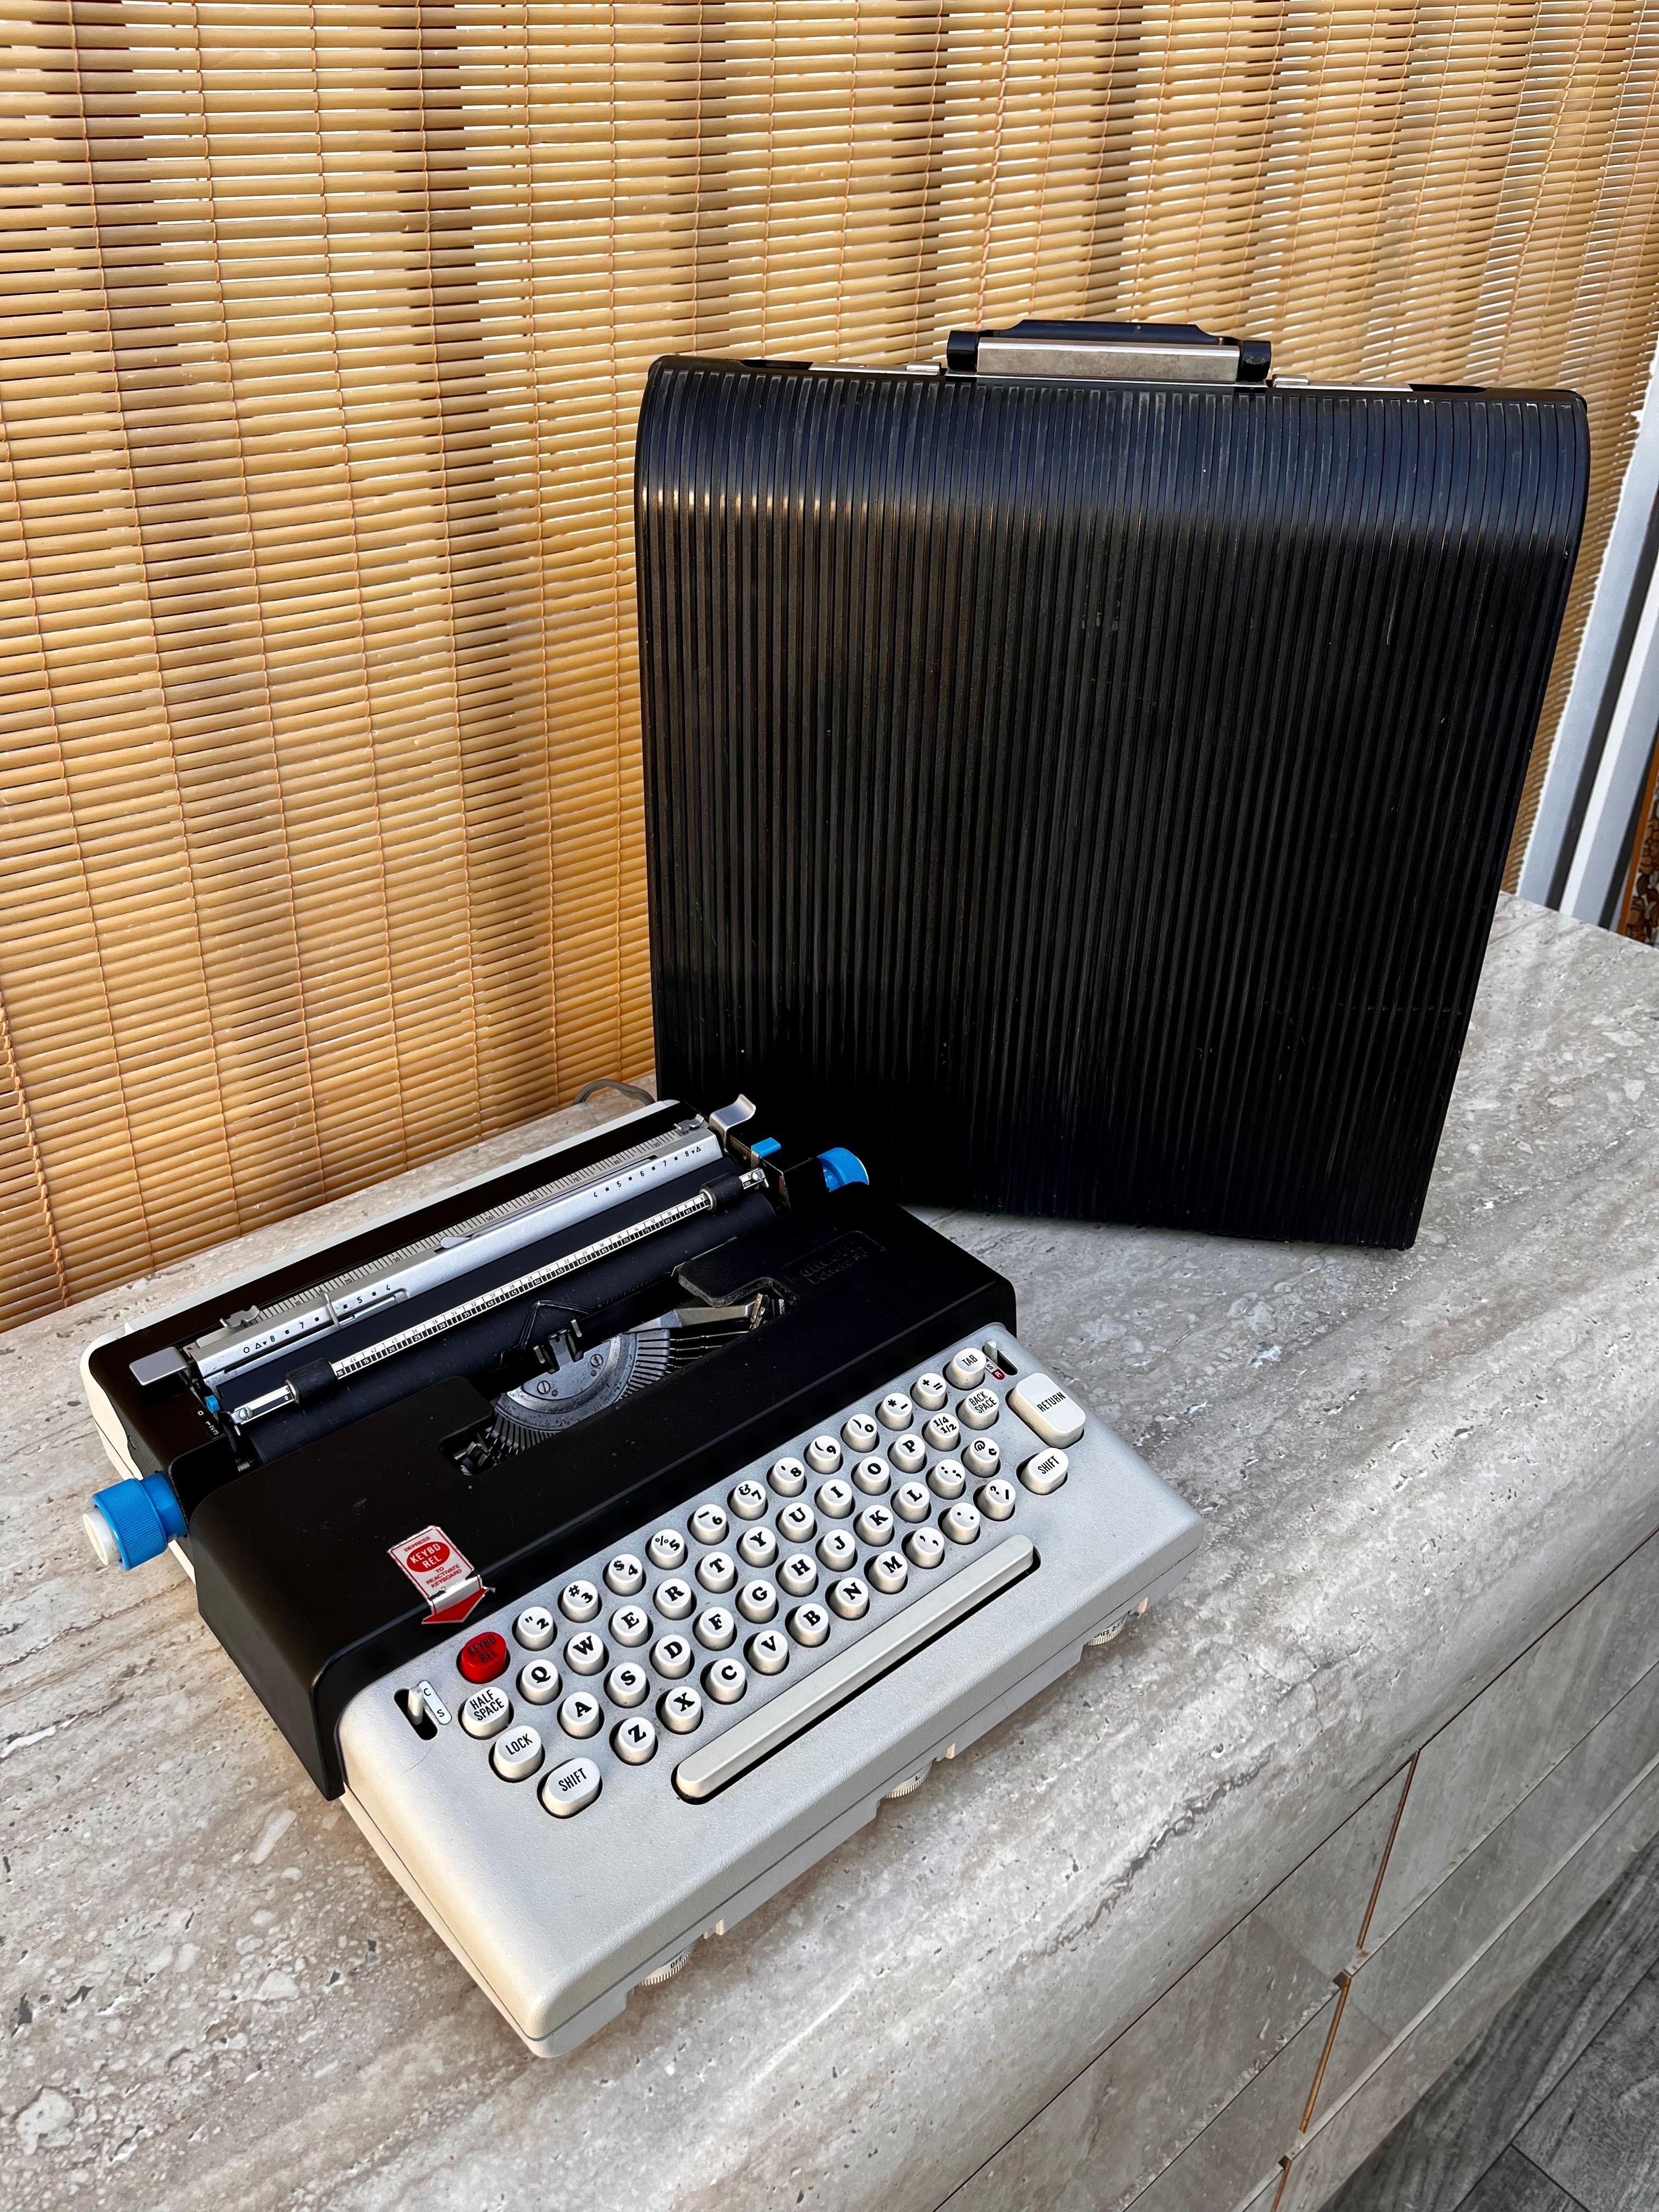 Vintage Olivetti Lettera 36 Tragbare Schreibmaschine mit dem Original-Koffer. ca. Anfang der 1970er Jahre
Die Olivetti Lettera 36 wurde von dem berühmten italienischen Designer/Architekten Ettore Sottsass entworfen und war die erste tragbare